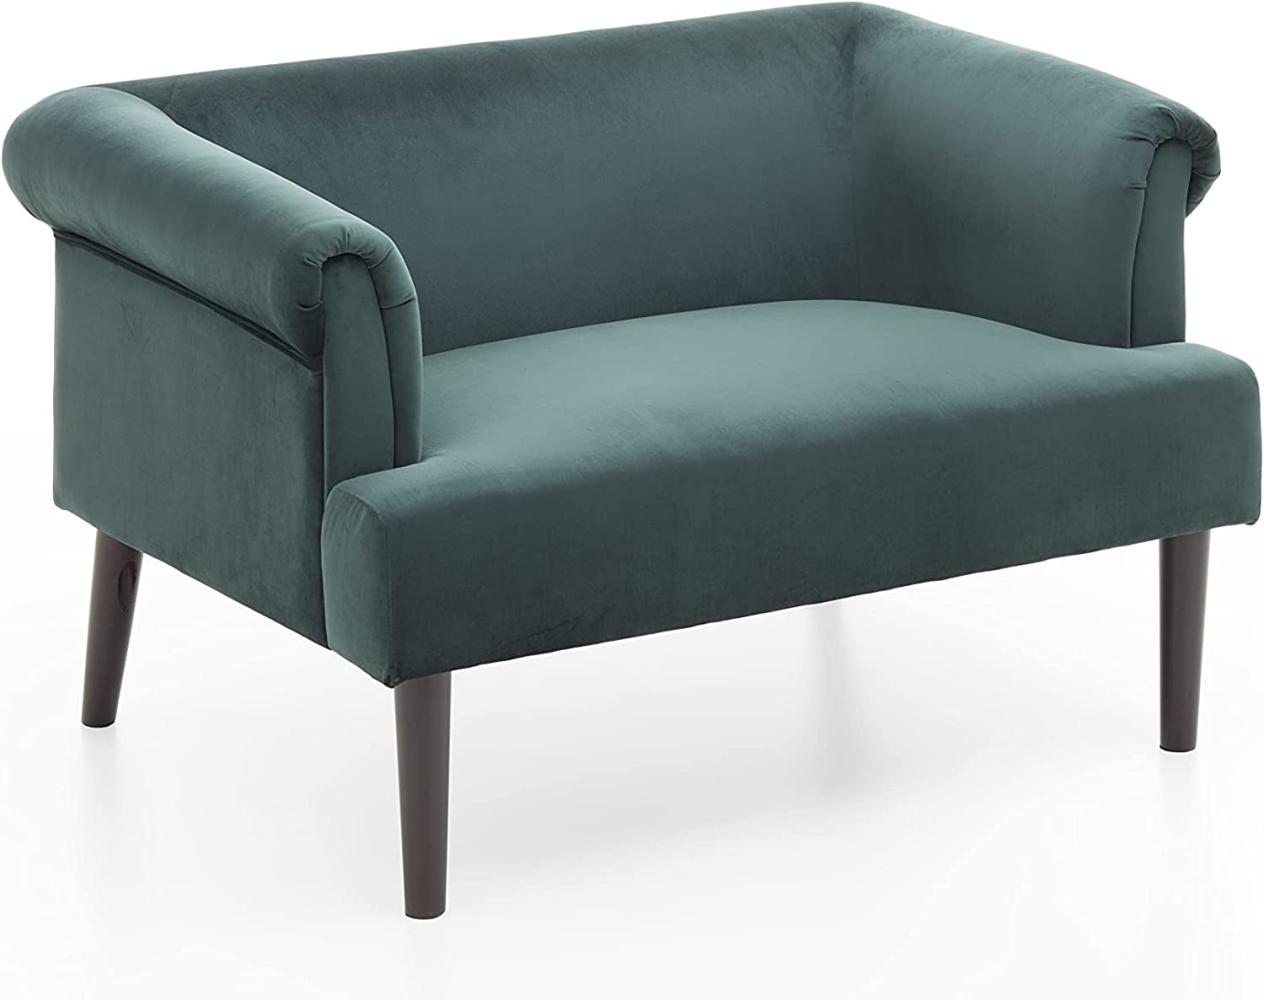 ATLANTIC home collection Sessel – günstig | bei CHECK24 Preisvergleich kaufen